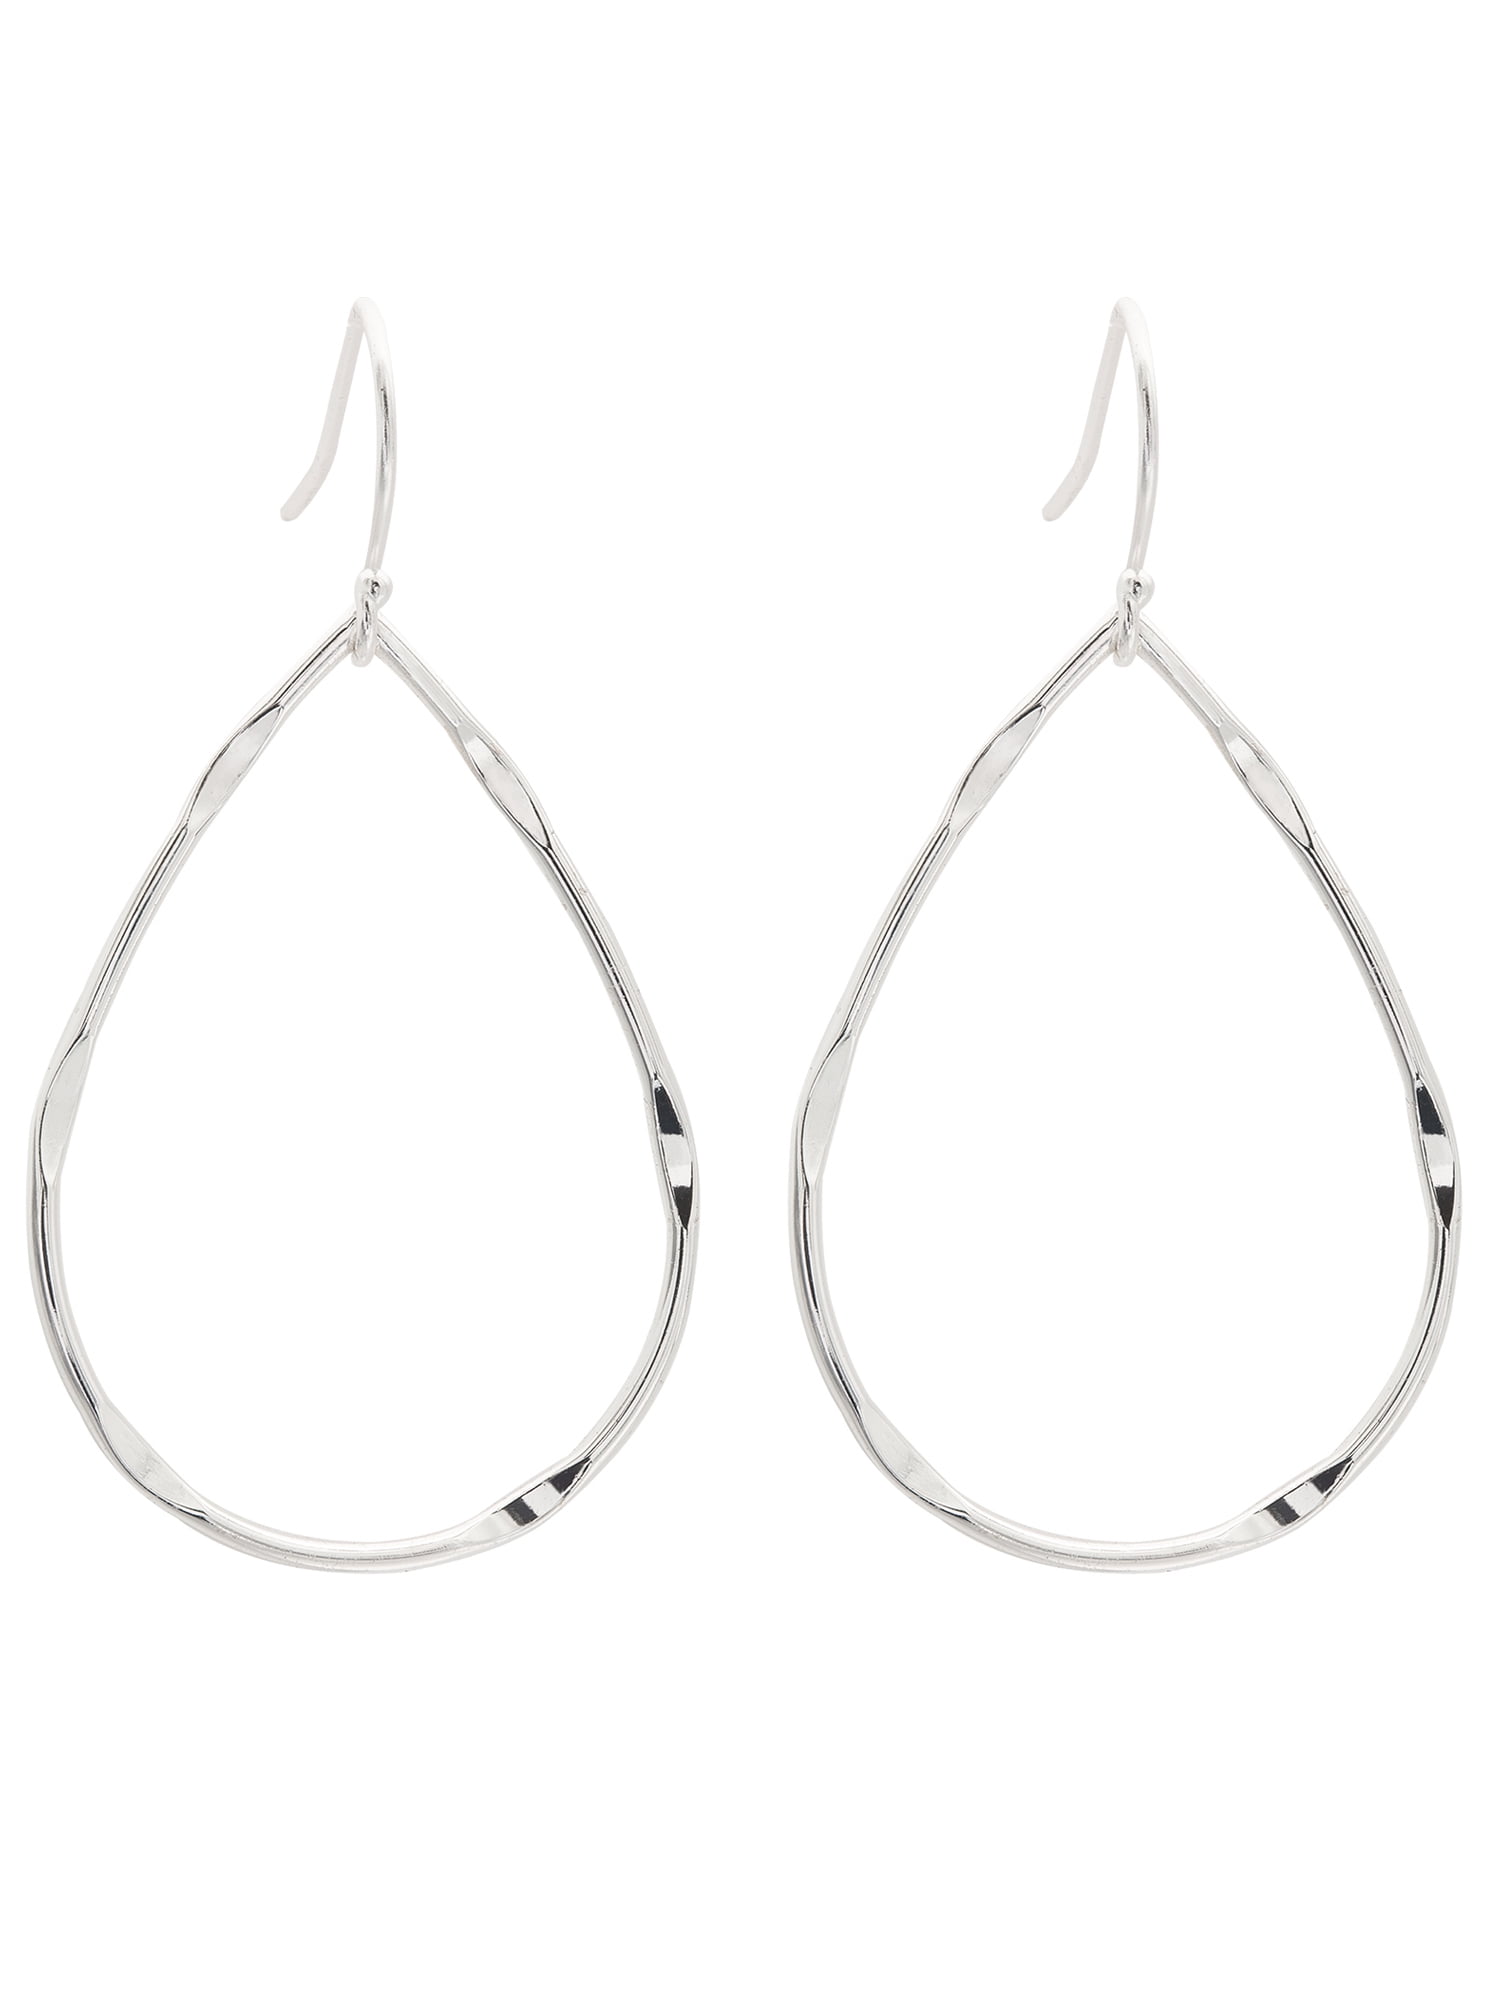 AYYUFE 1 Pair Women Earrings Flying Swallow Shape Tassels Jewelry Fashion  Appearance Electroplating Clip Earrings for Daily Wear - Walmart.com